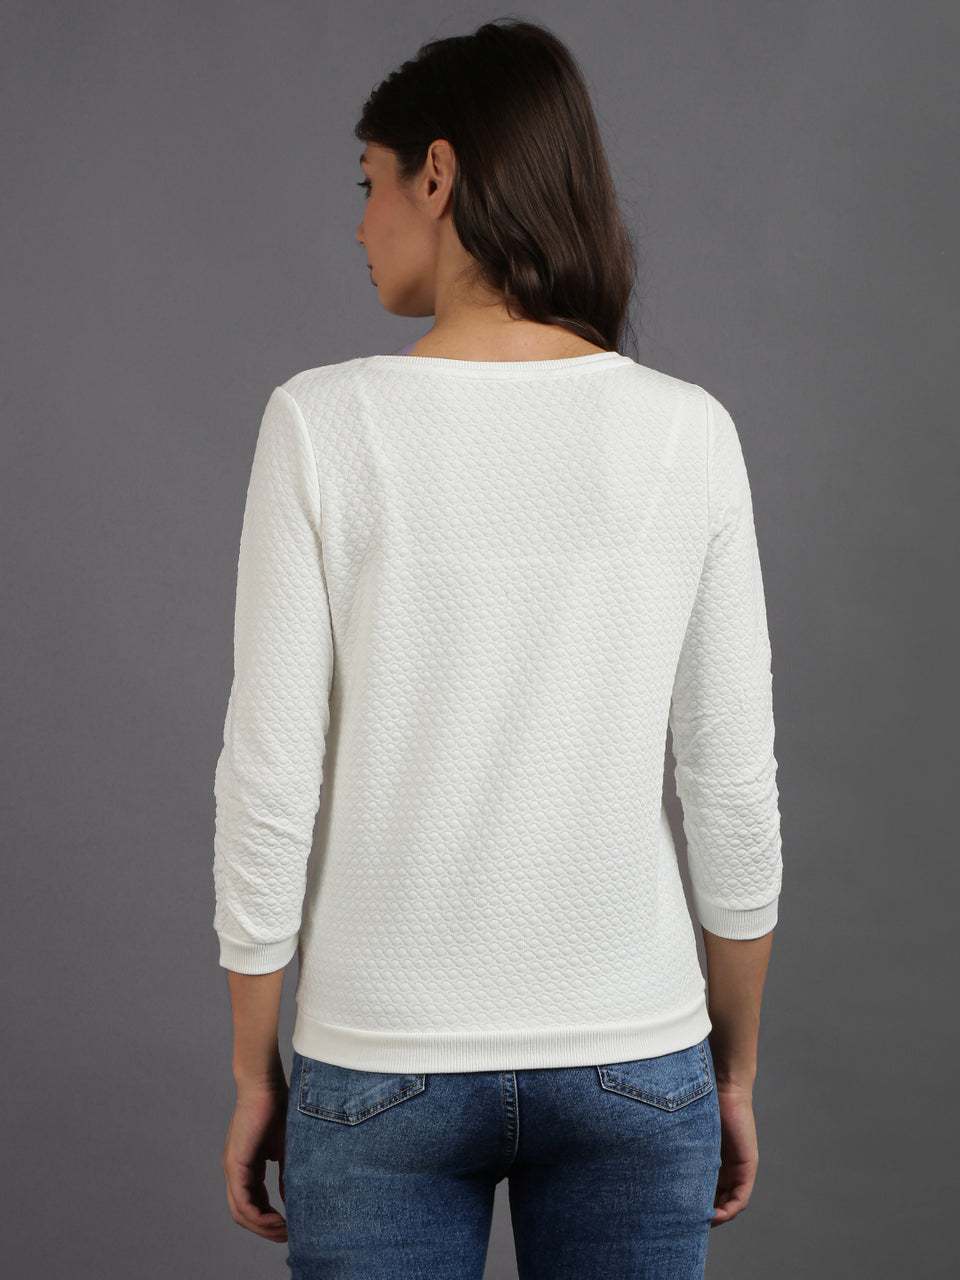 women solid white cotton pullover sweatshirt